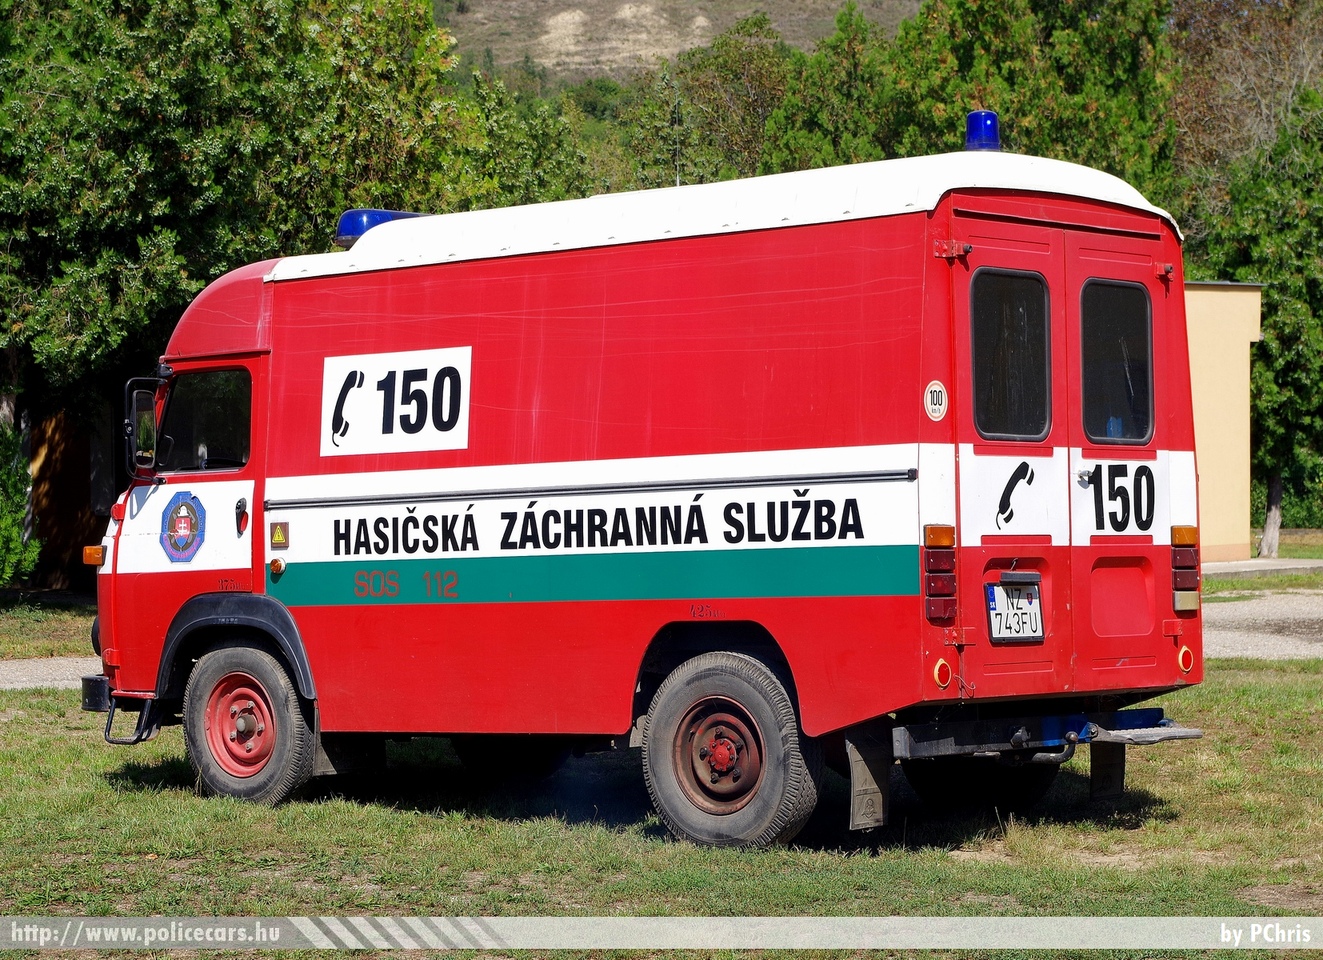 Avia A21, Önkéntes Tűzoltó Egyesület Garamkövesd (DHZ Kamenica Nad Hronom), fotó: PChris
Keywords: Szlovákia szlovák tûzoltó tûzoltóautó tûzoltóság fire firetruck Slovakia slovakian